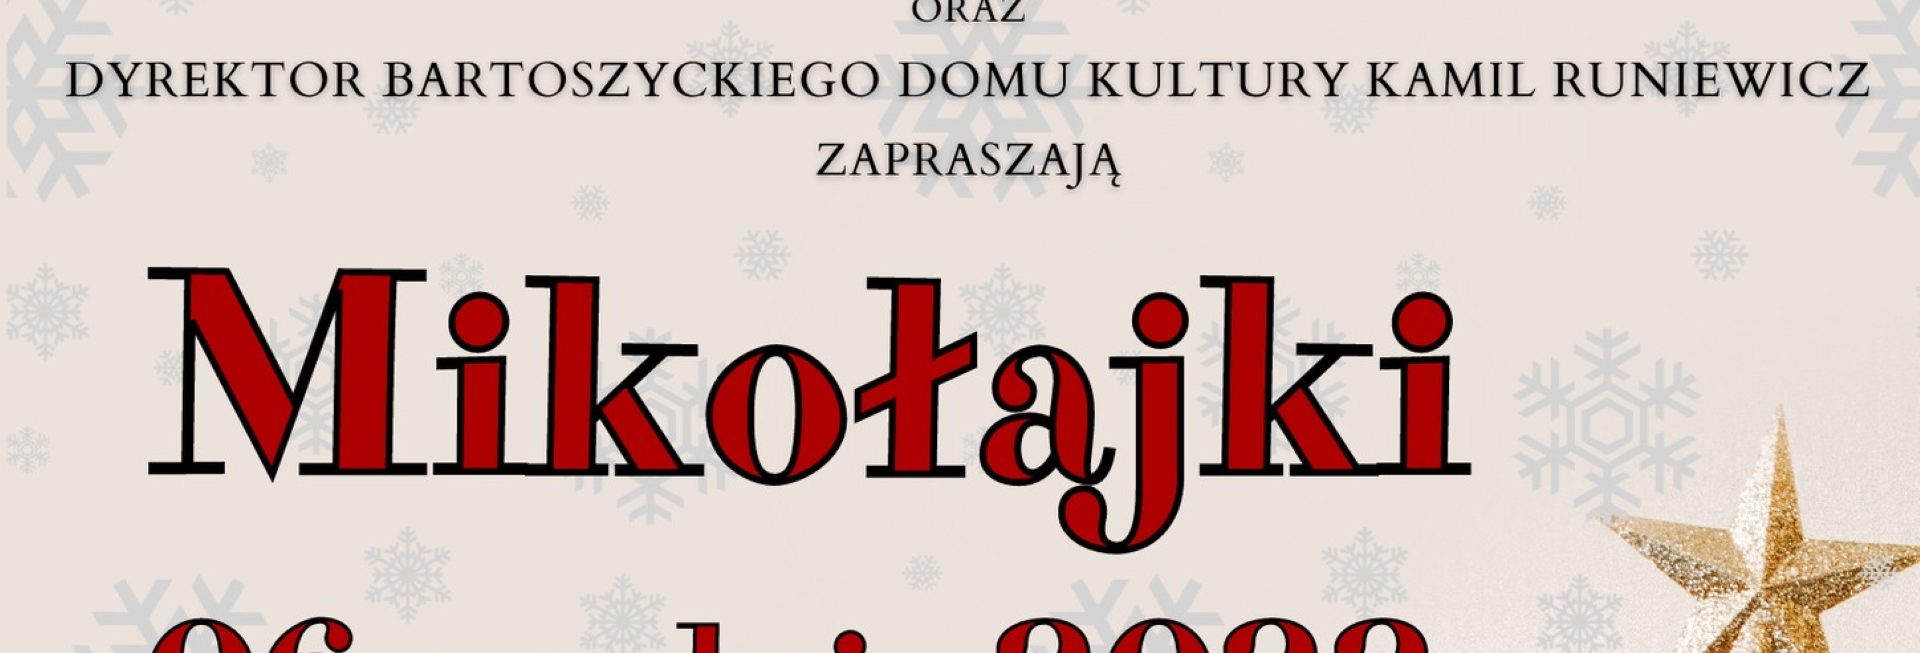 Plakat zapraszający do Bartoszyc na Mikołajki w Bartoszycach 2022.